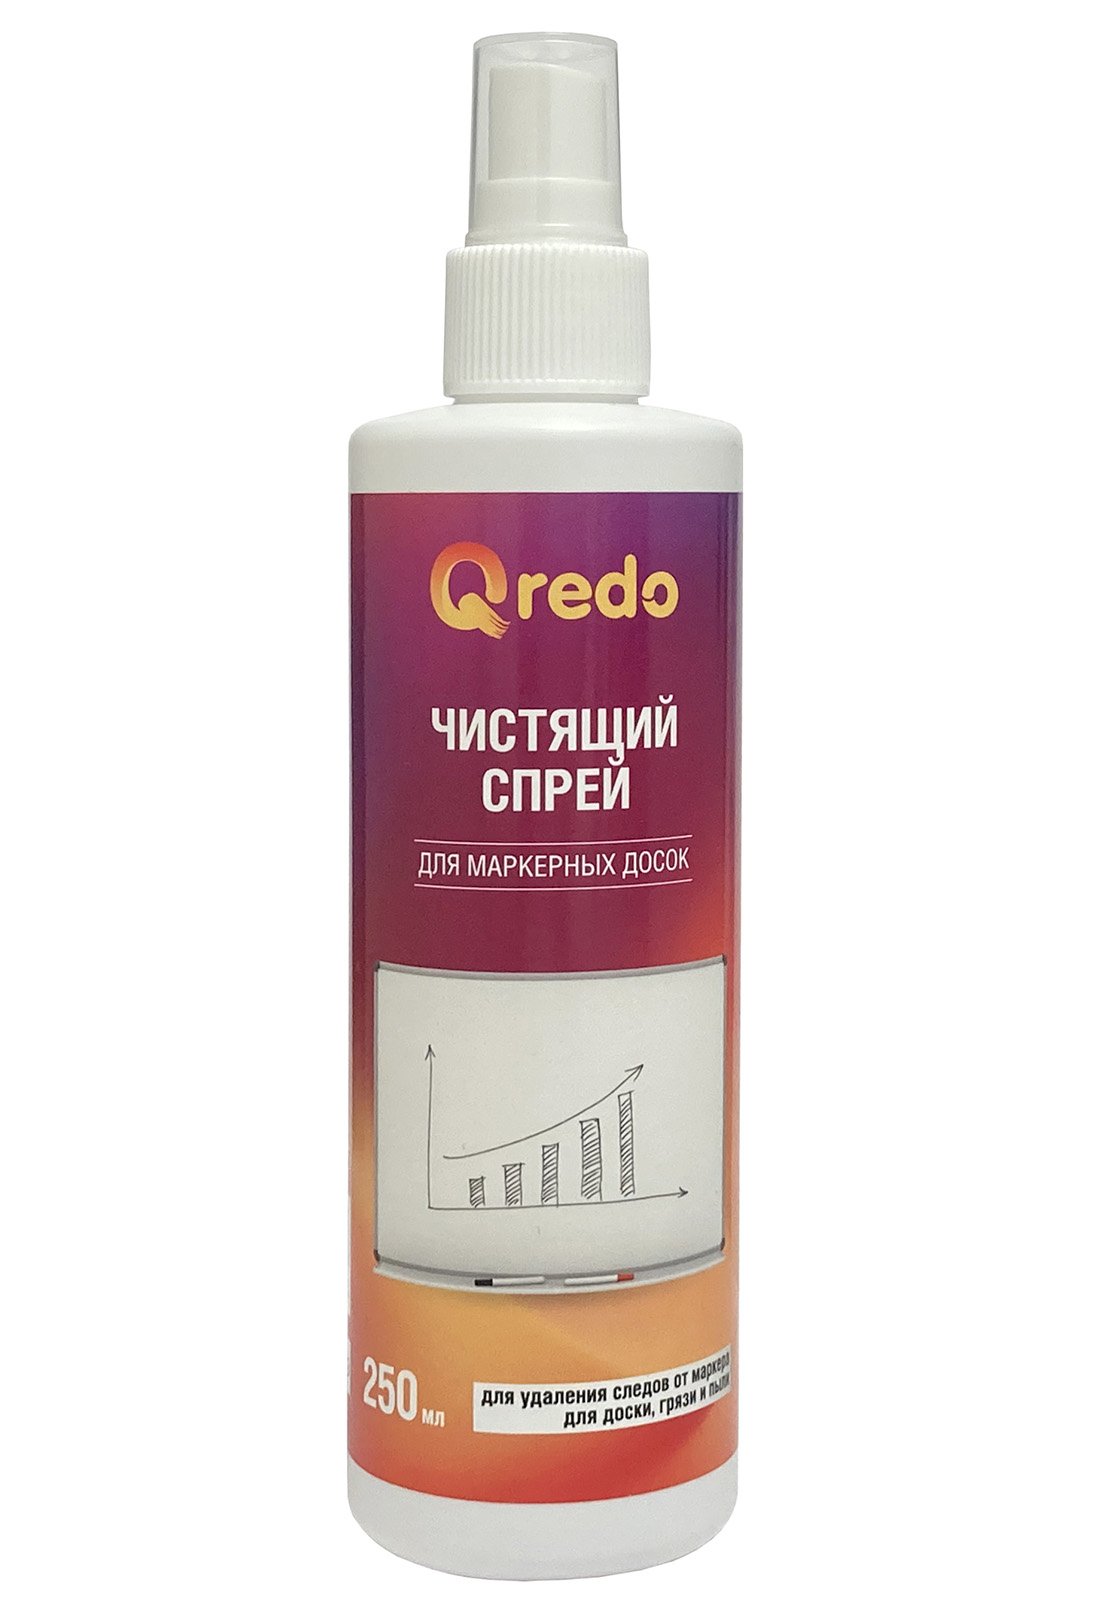 Спрей Qredo предназначен для удаления следов маркера на маркерных досках, очистки поверхностей от грязи и пыли. Эффективно очищает поверхность, обезжиривает ее, не оставляет разводов. Обладает антистатическим эффектом. Объем флакона 250 мл.